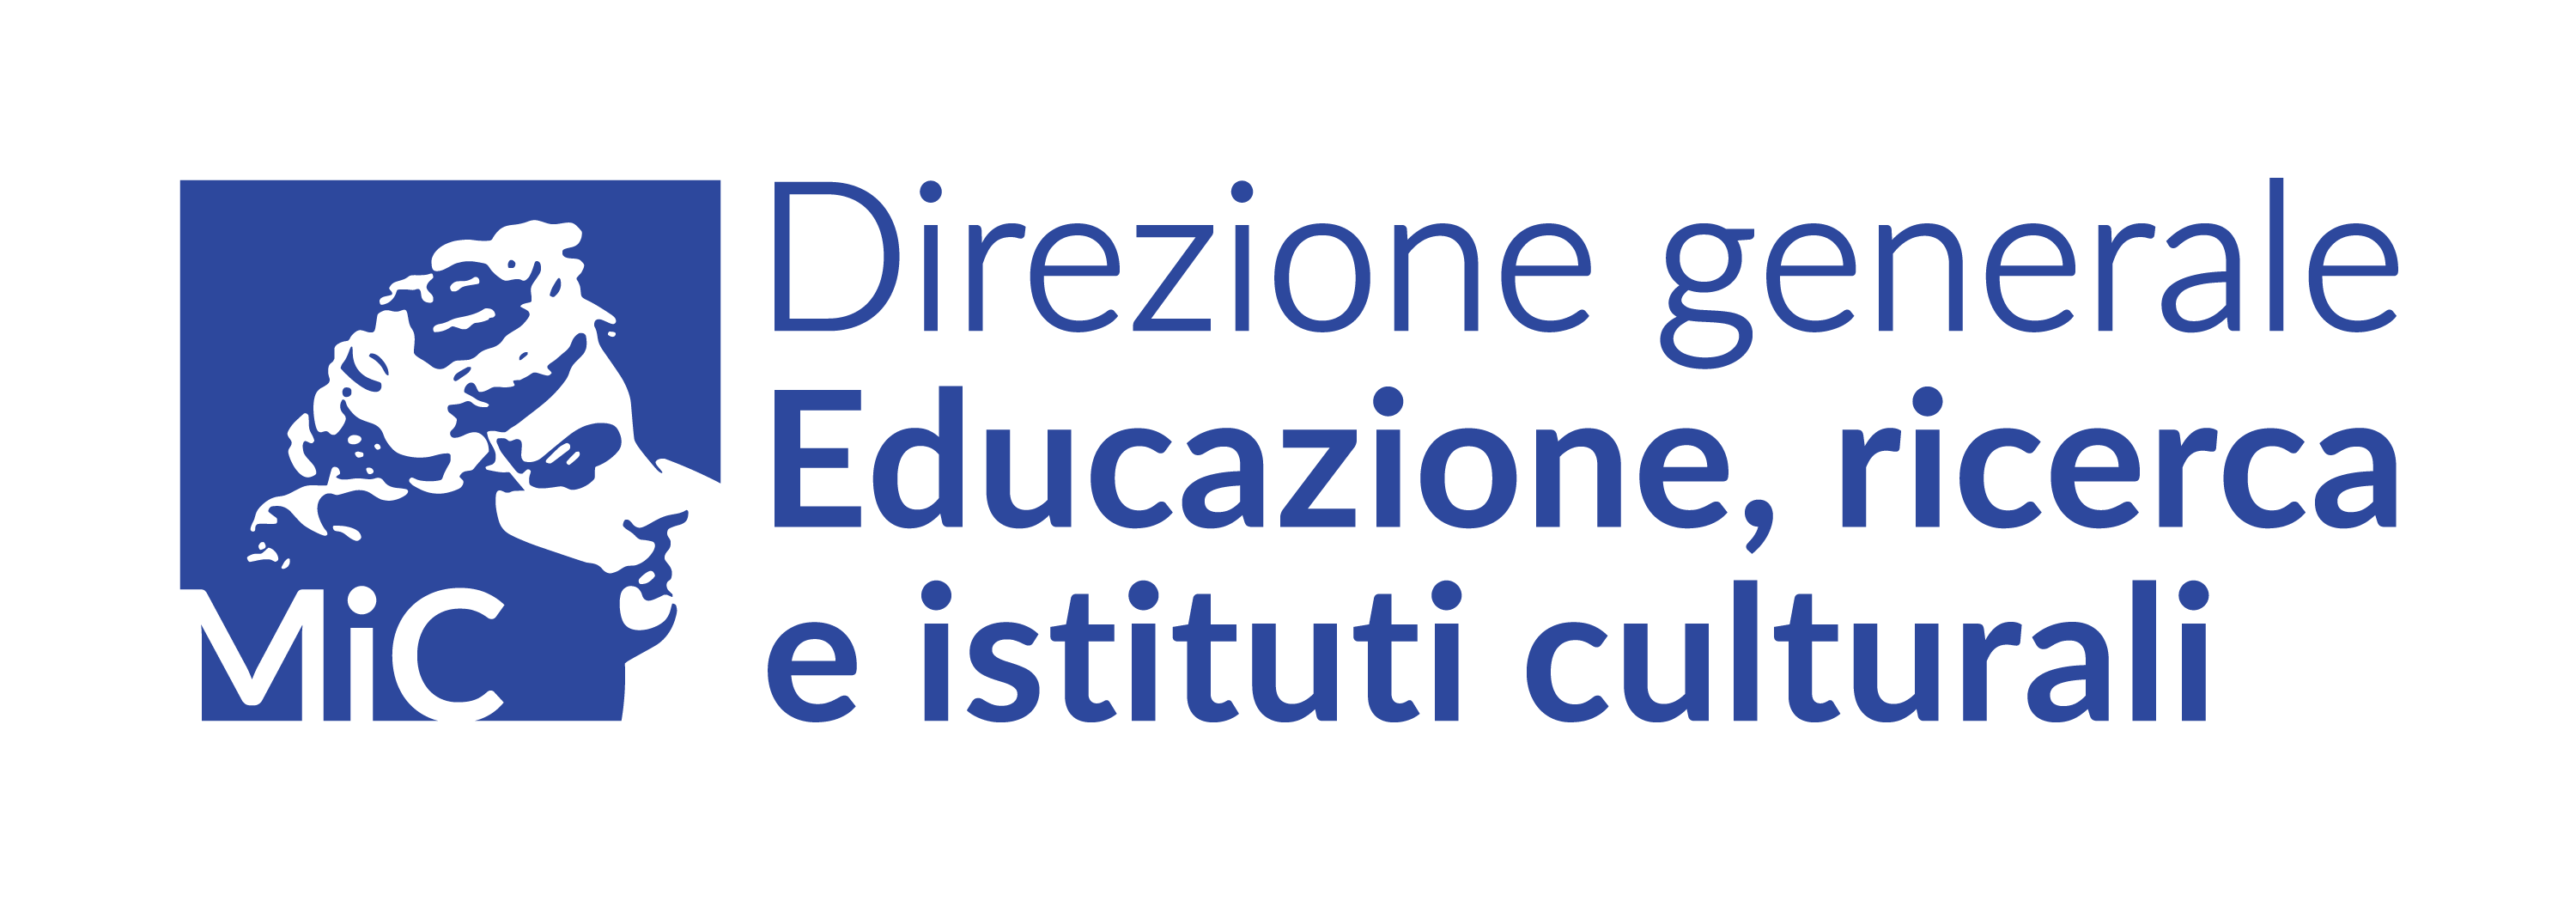 Logo direzione generale educazione, ricerca e istituti culturali